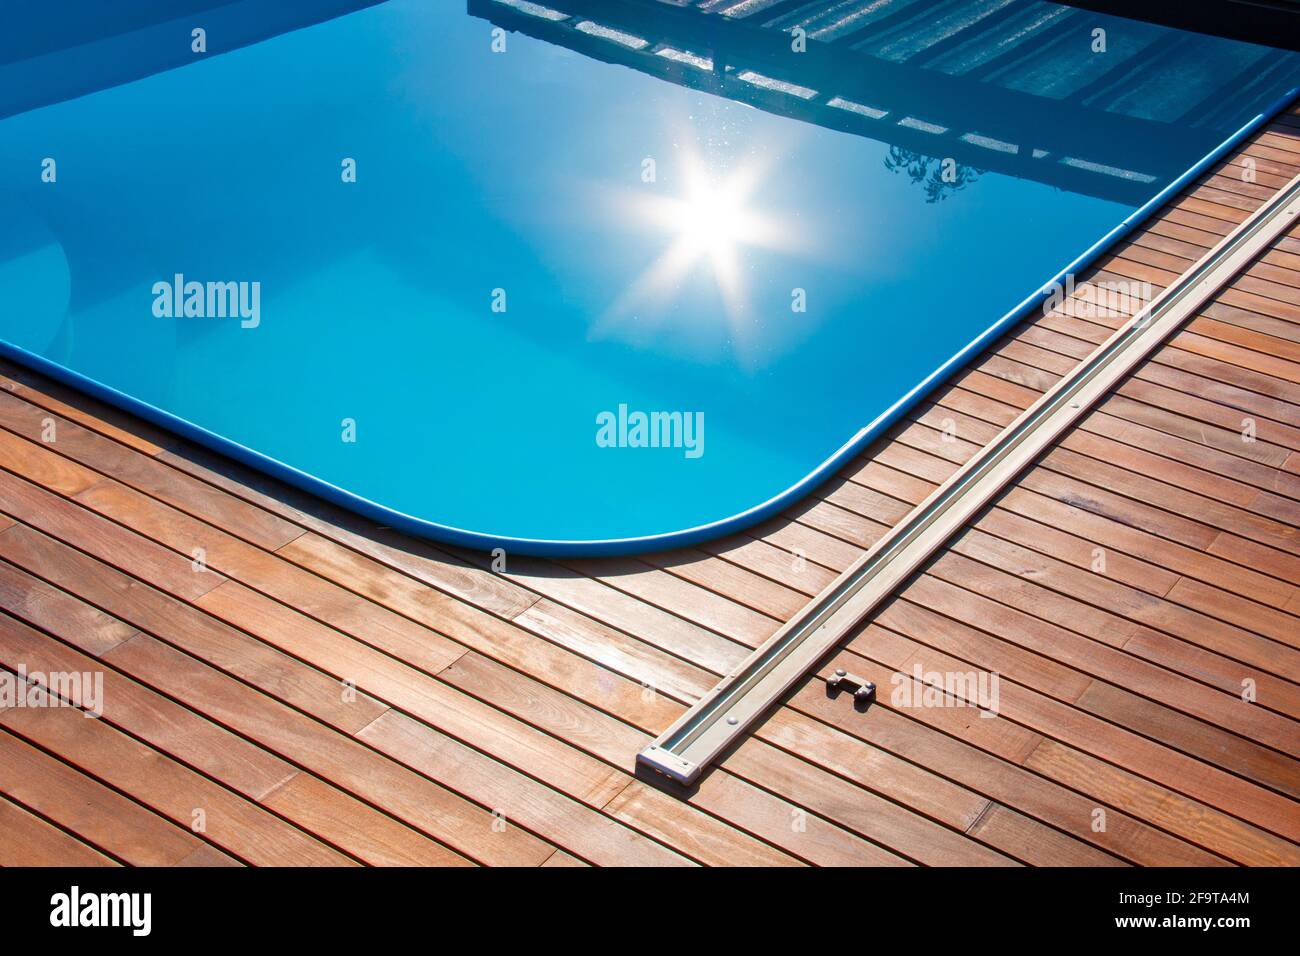 Terrazza in legno IPE intorno alla piscina, bordo della piscina all'aperto con riflesso del sole sull'acqua blu, terrazza in legno tropicale da vicino Foto Stock